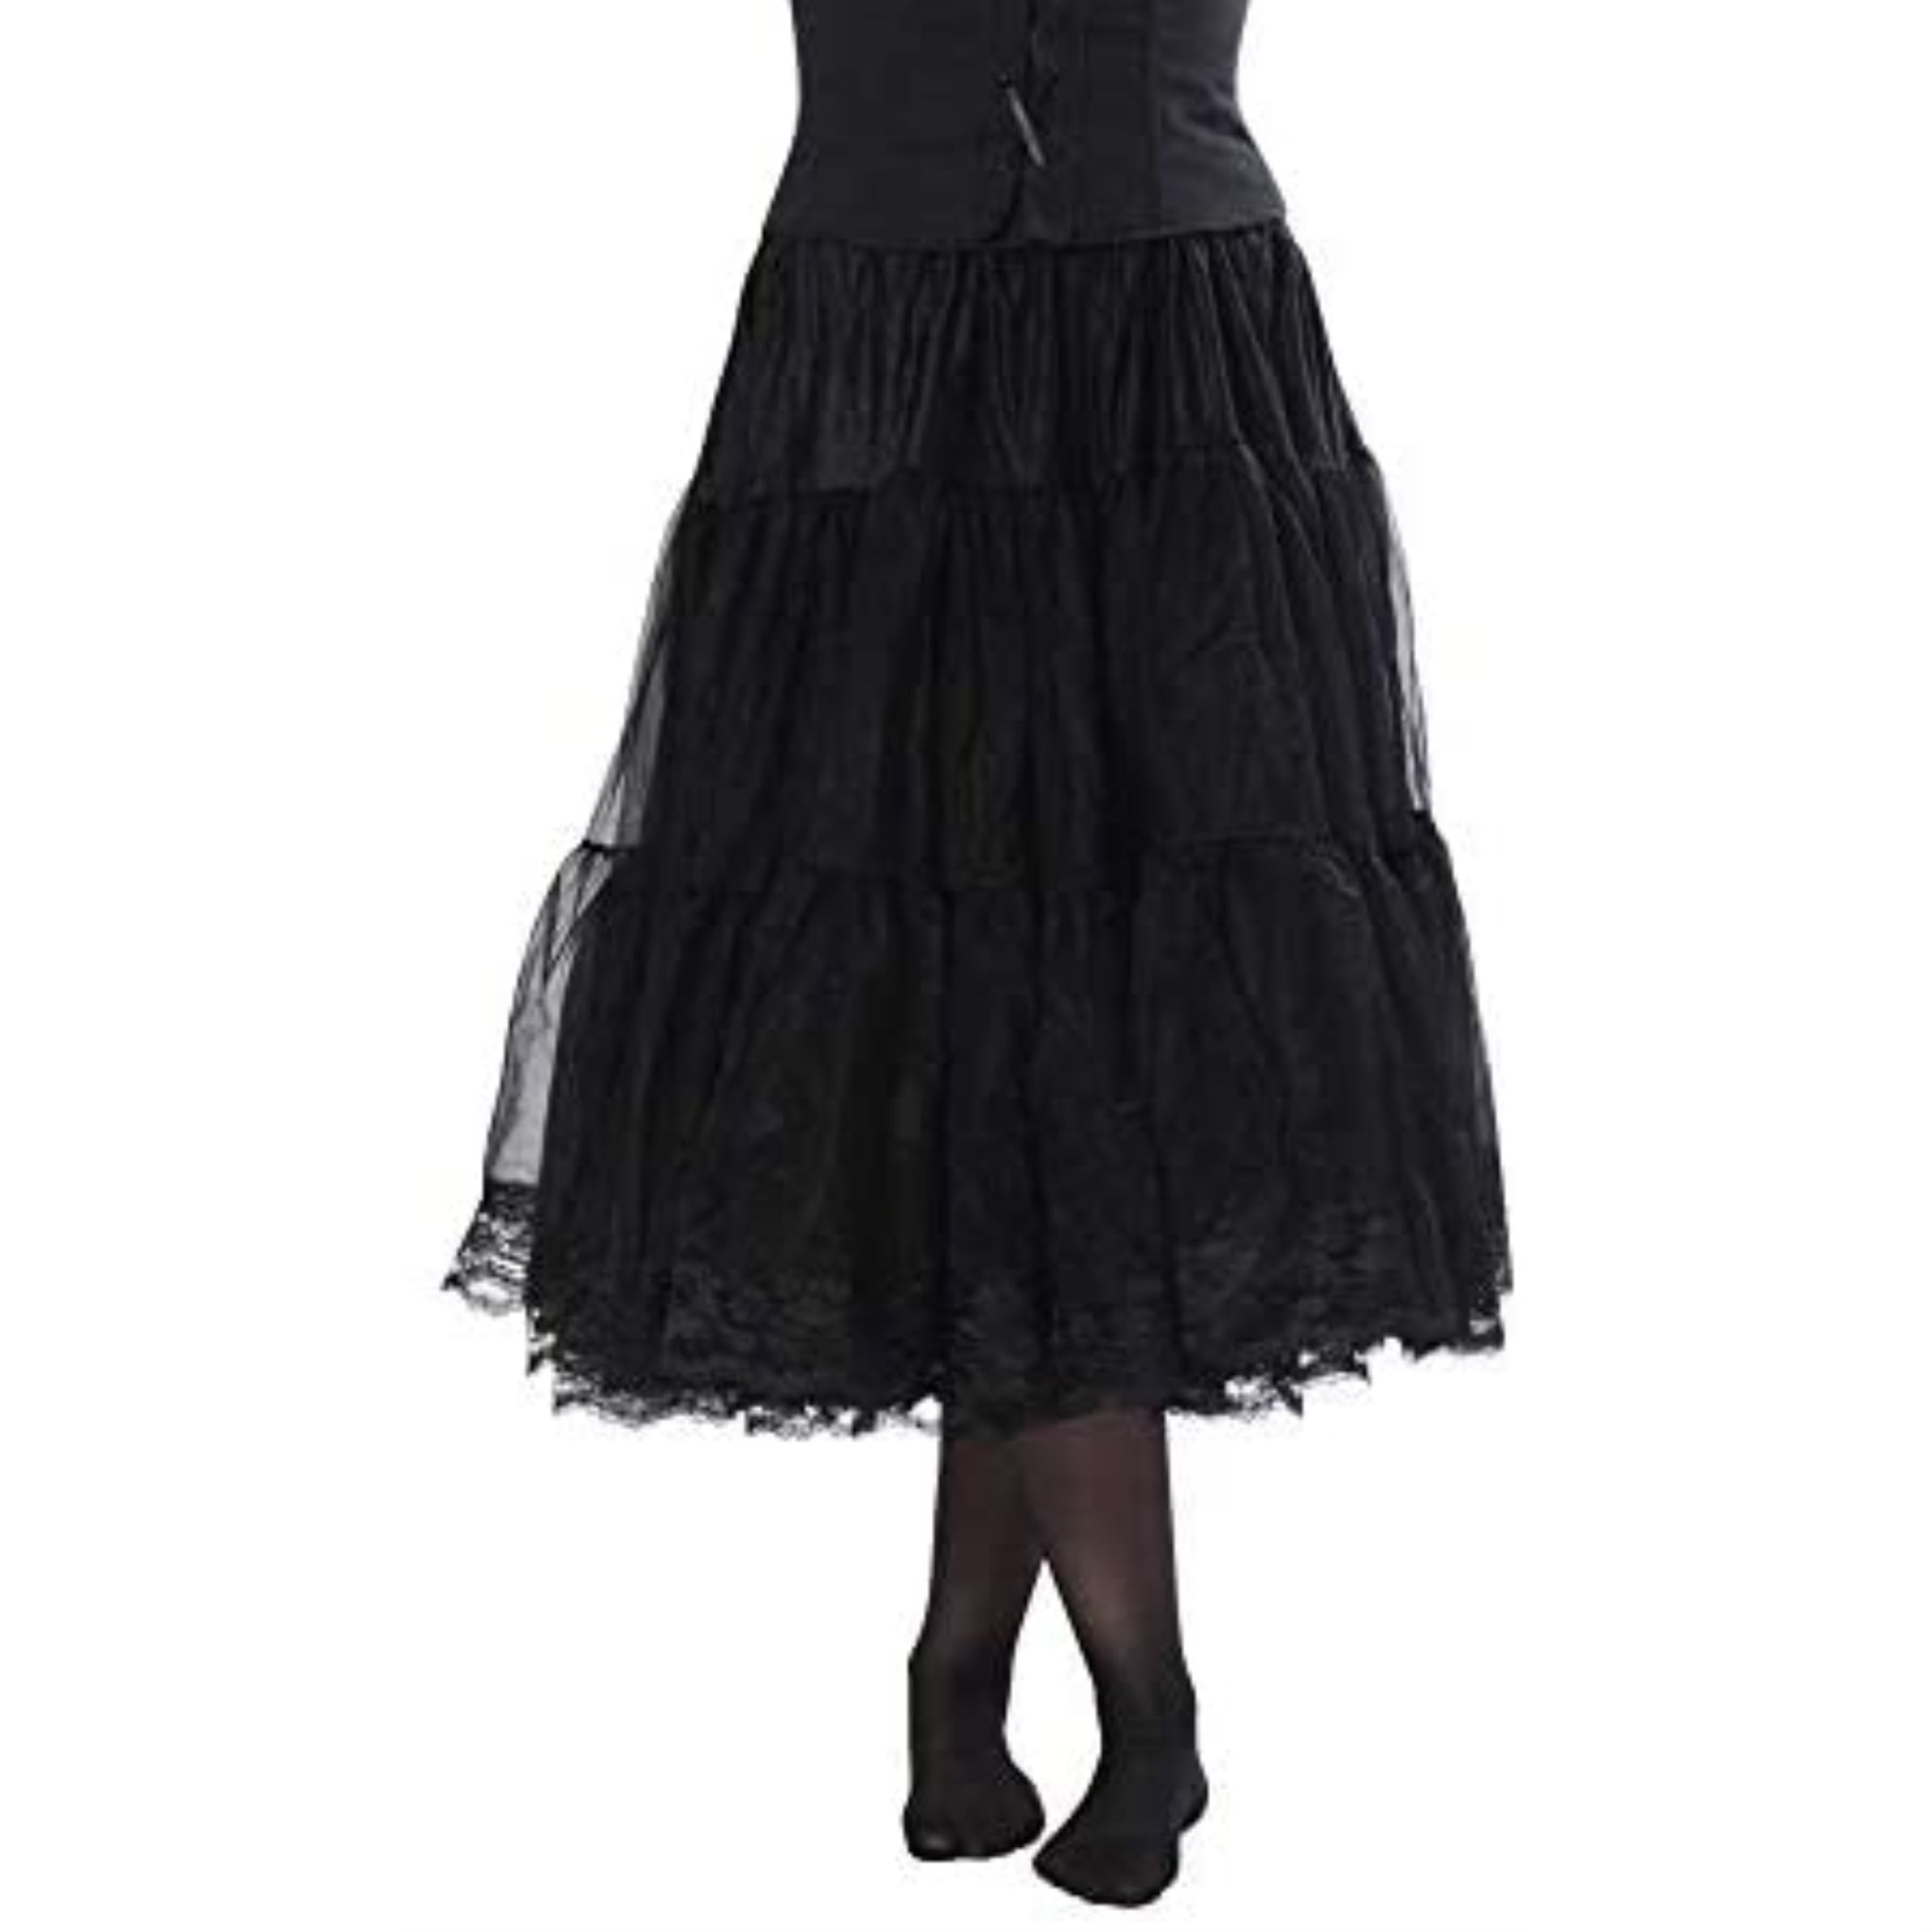 New petticoat Rtb 101  1/4 drop waist black full length petticoat 